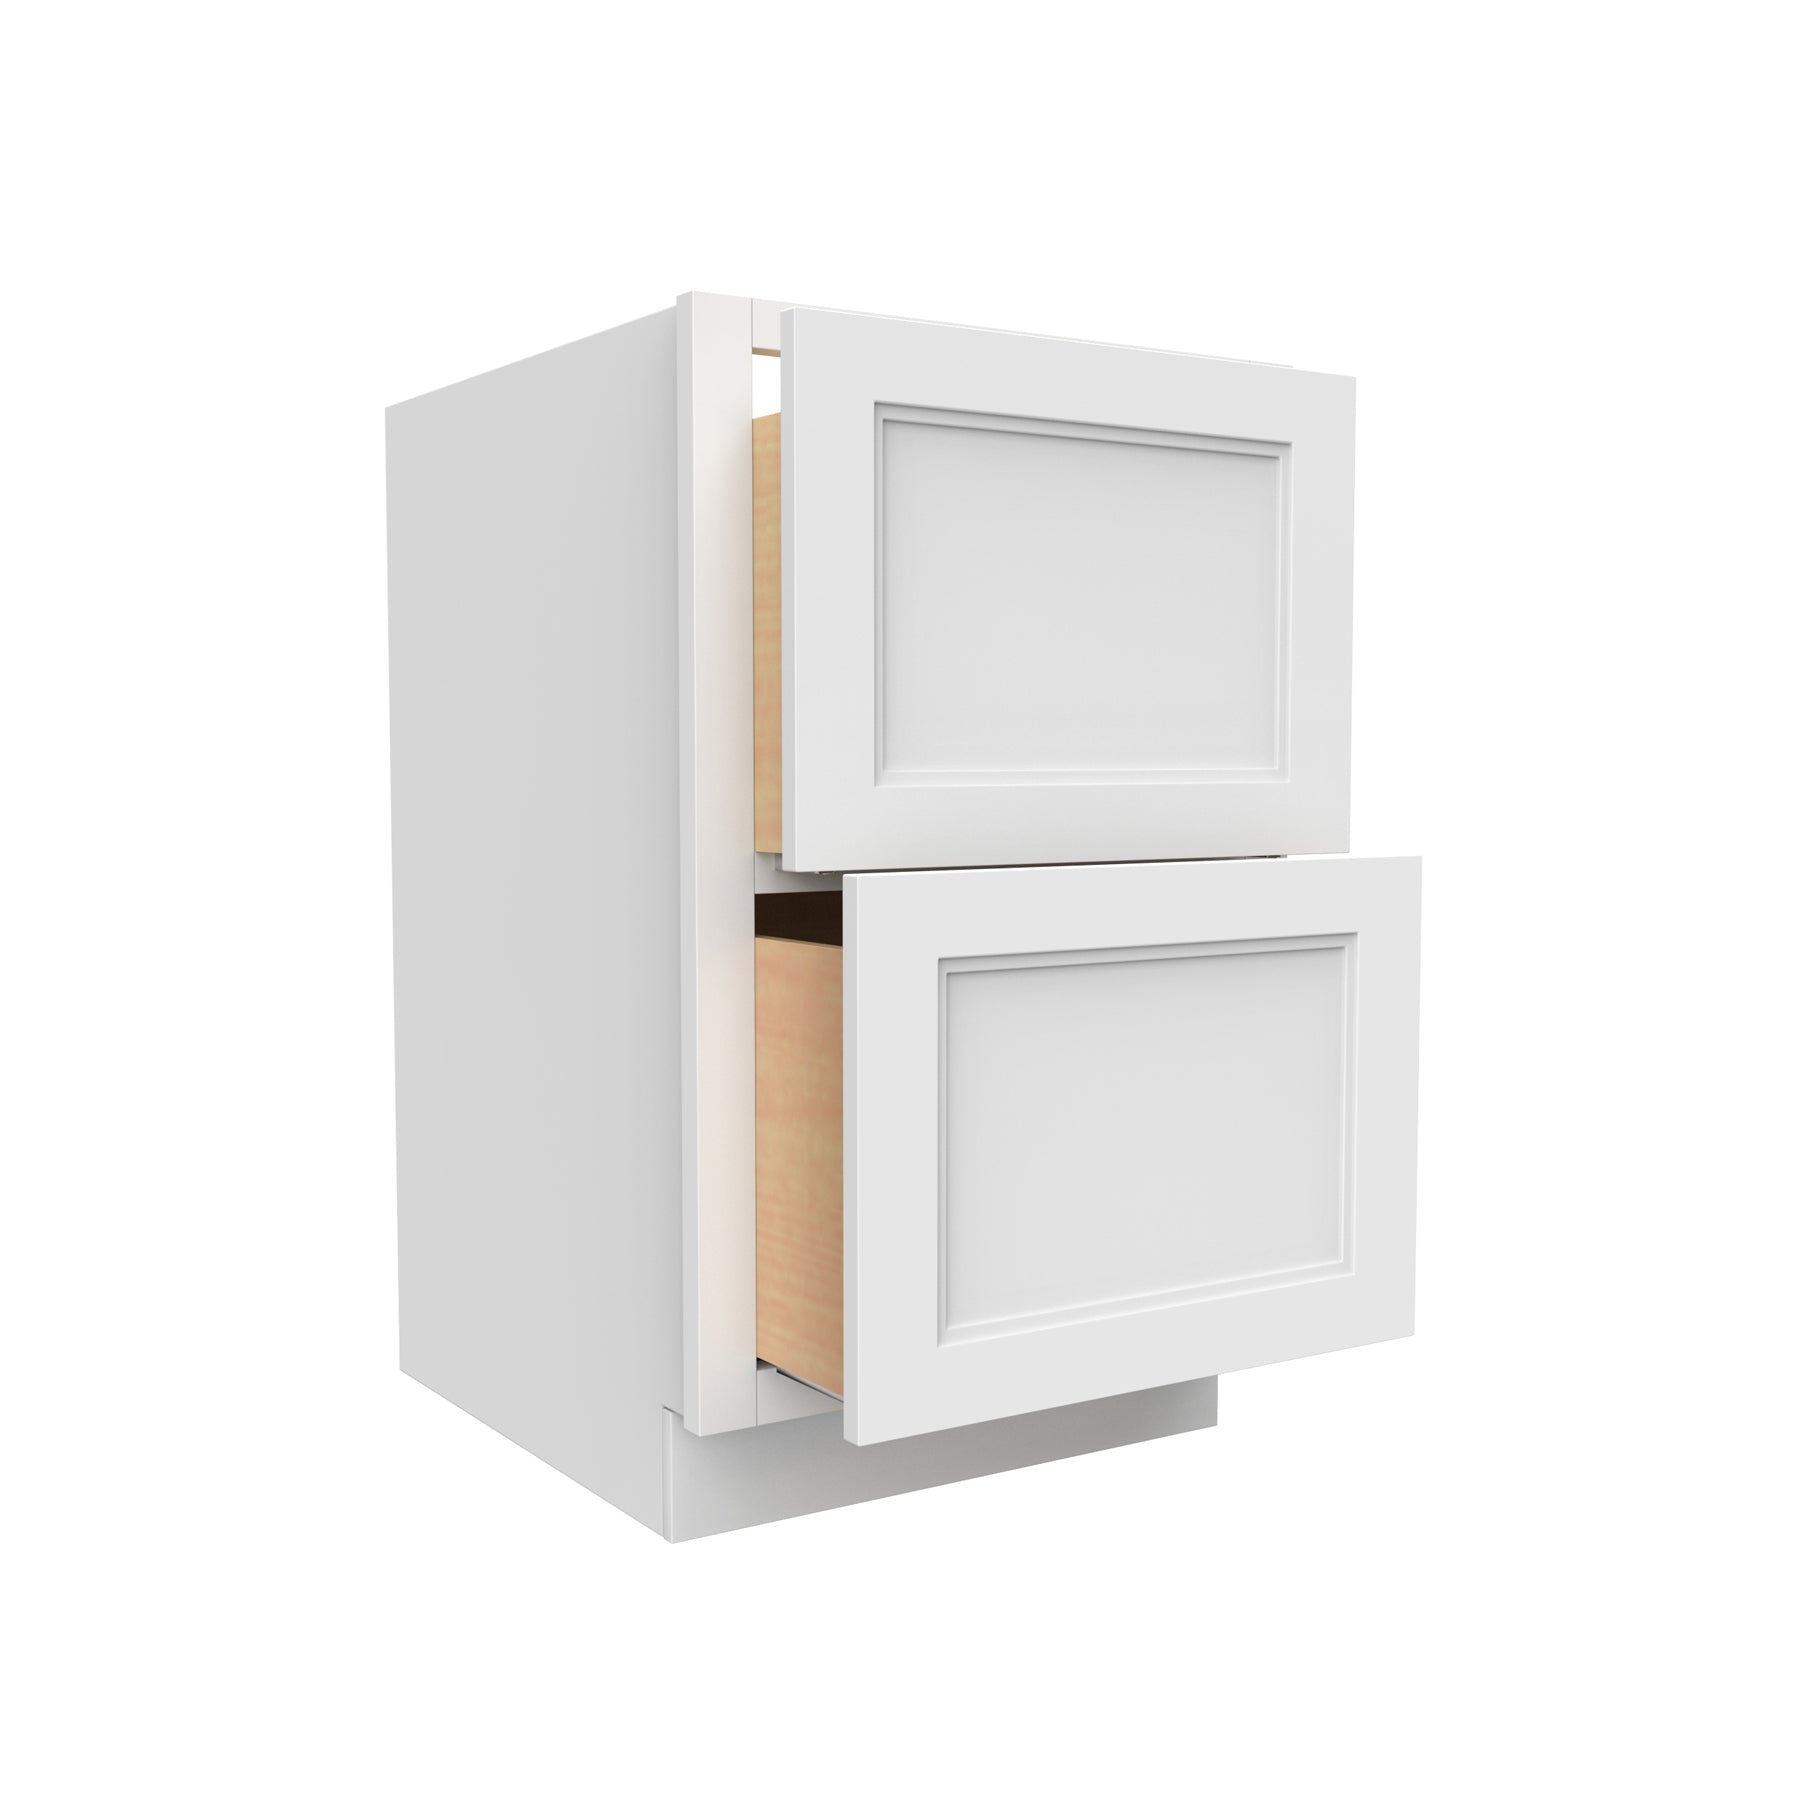 Fashion White - 2 Drawer Base Cabinet | 24"W x 34.5"H x 24"D